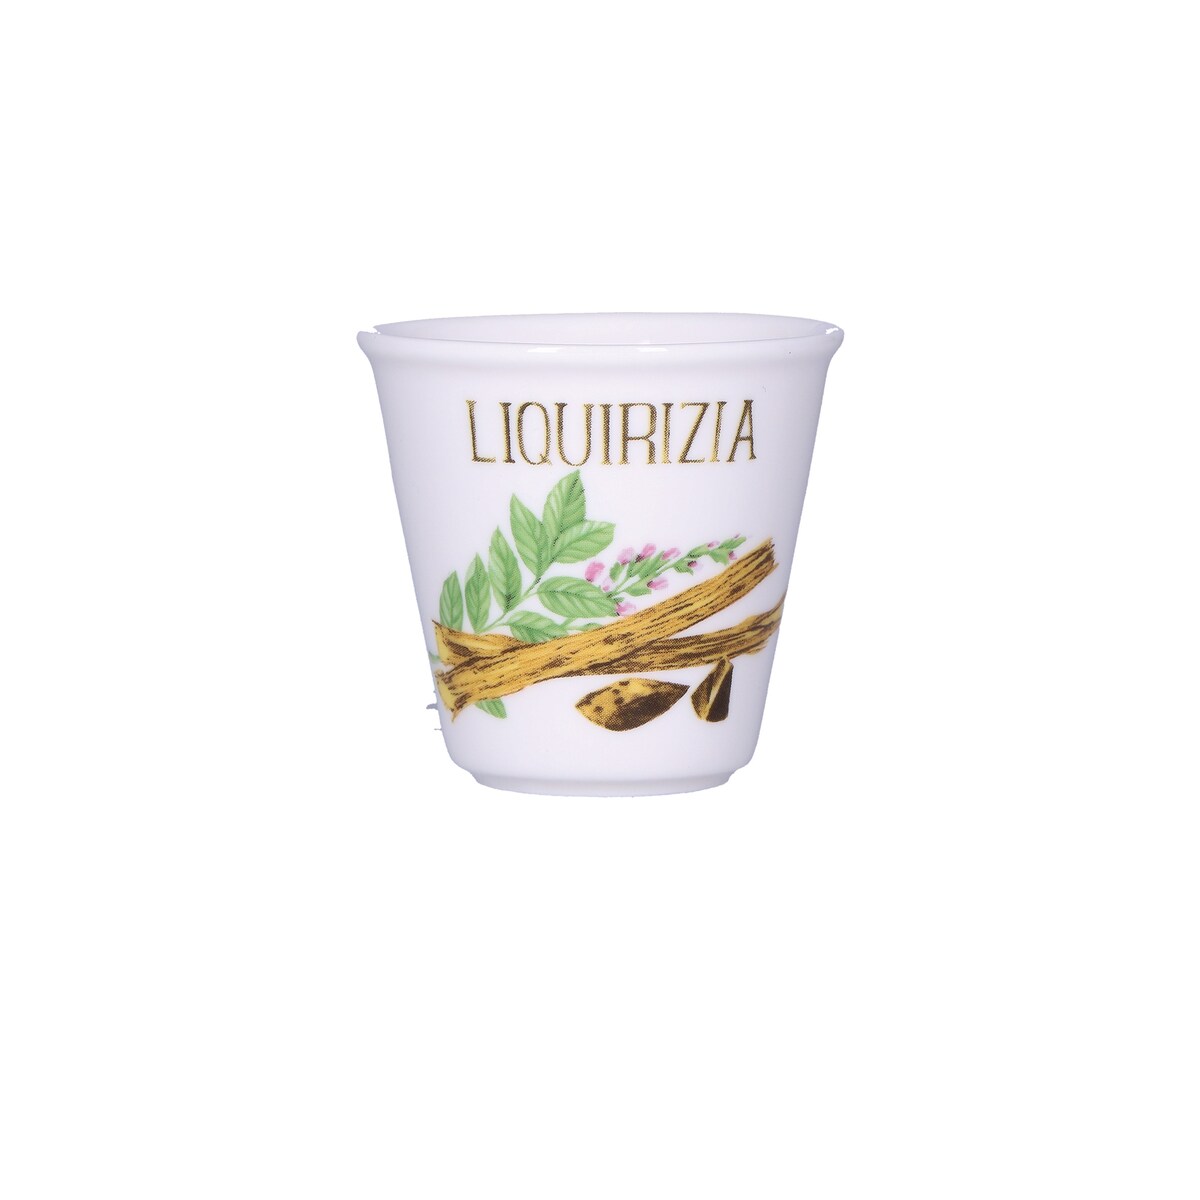 Zestaw 6 kieliszków na likier Liquirizia Liquorelli - Biały, 75 ml